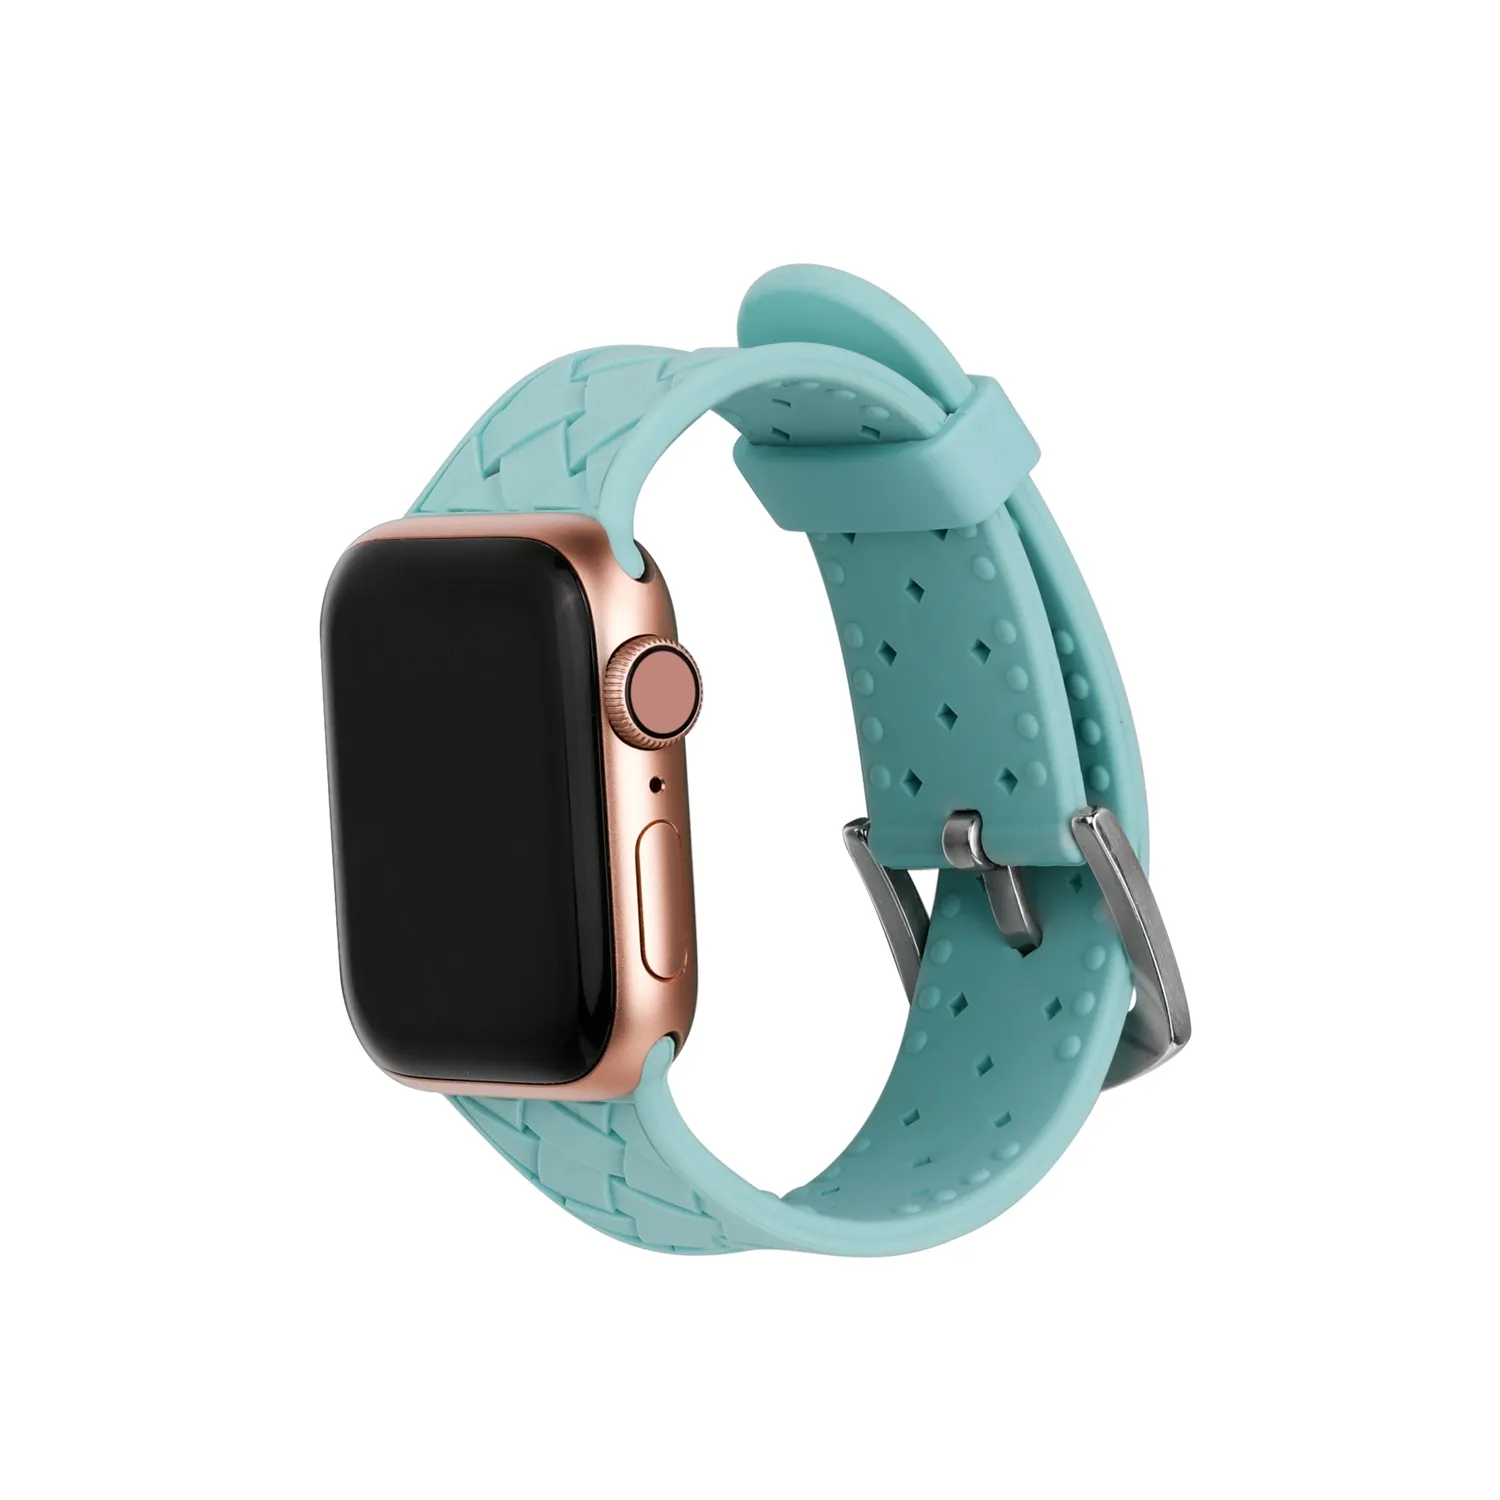 स्मार्ट घड़ी बैंड के लिए एप्पल एप्पल के लिए watchband 42mm 38mm घड़ी सिलिकॉन बैंड